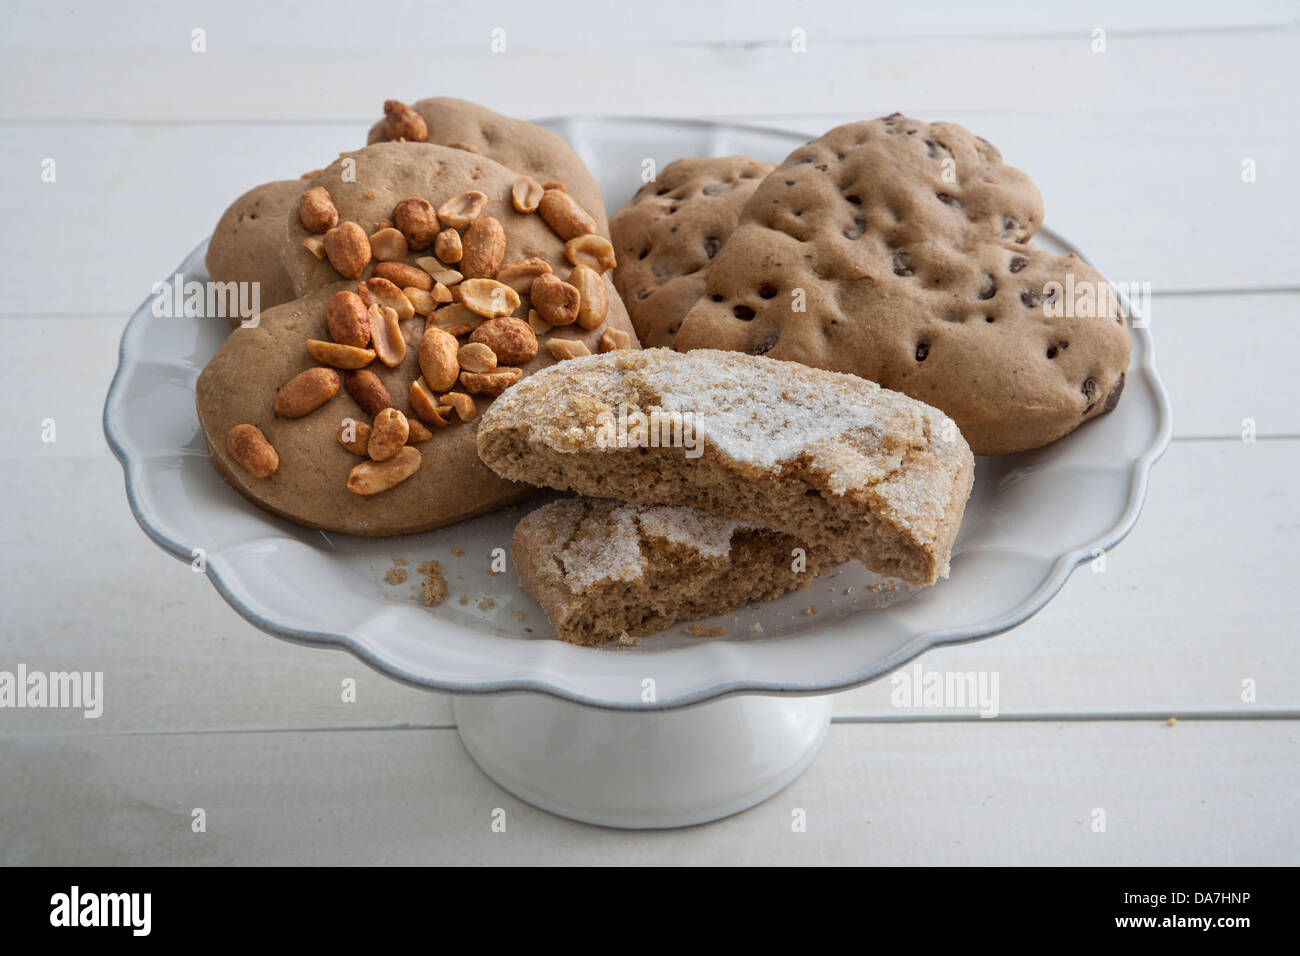 Grupo de galletas caseras en una placa Foto de stock